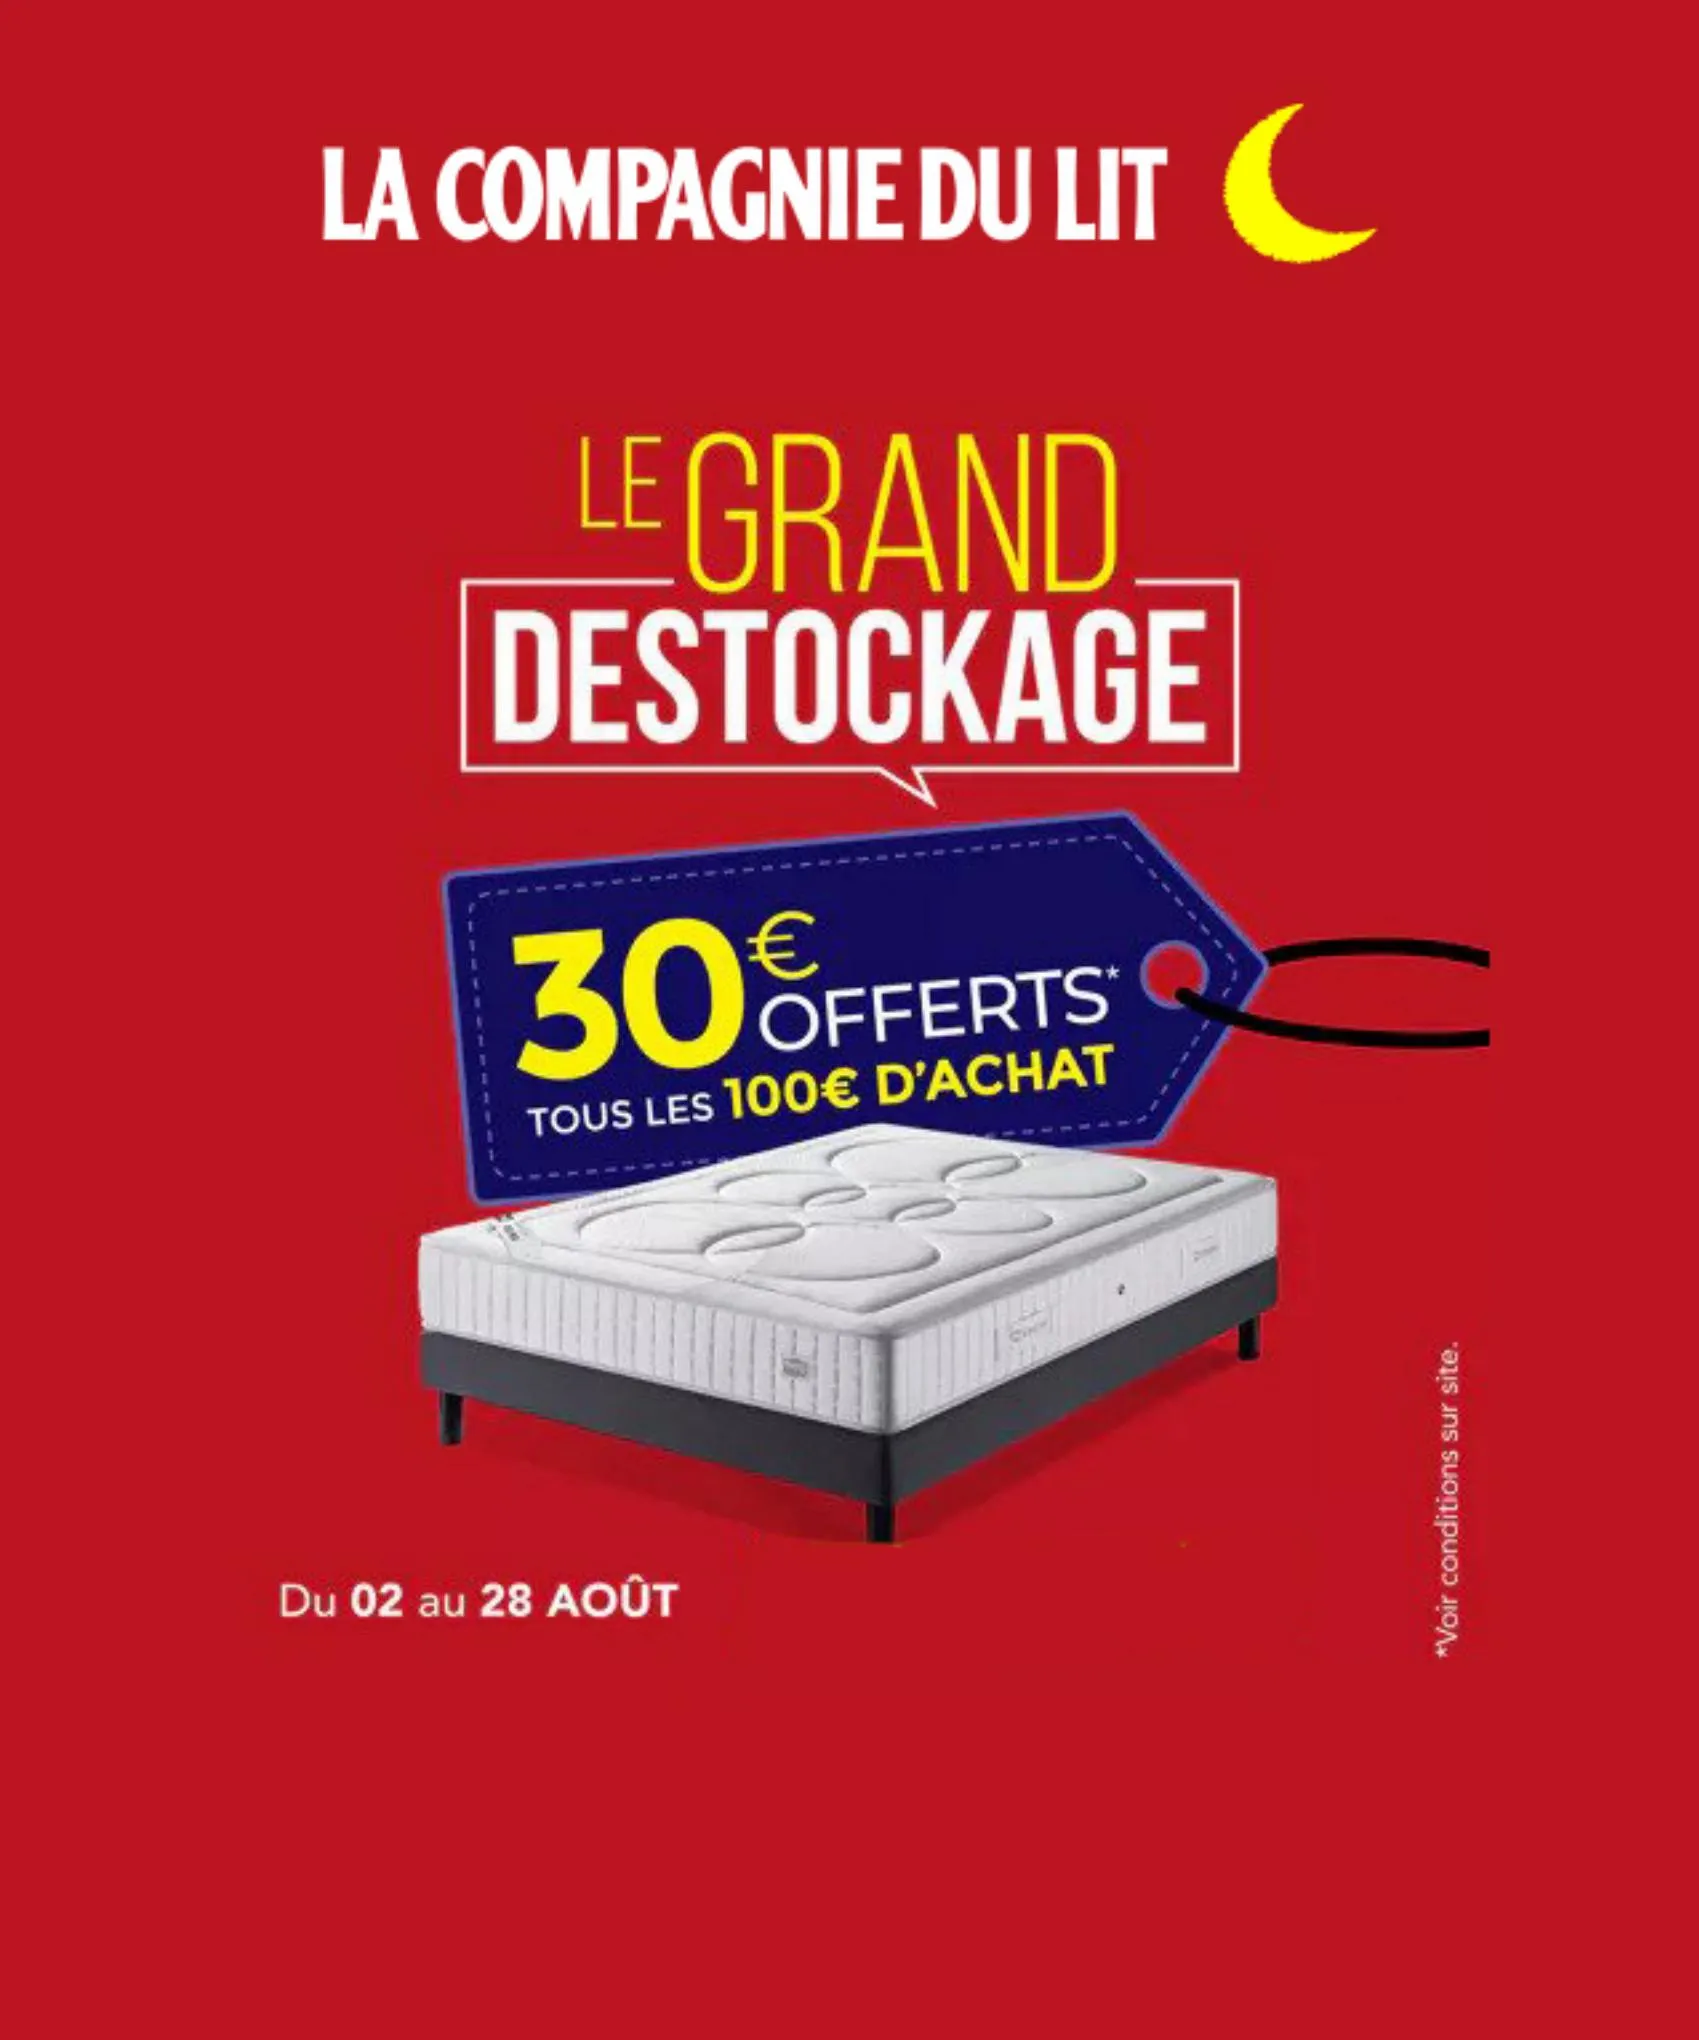 Catalogue Offerts La compagnie du lit!, page 00001